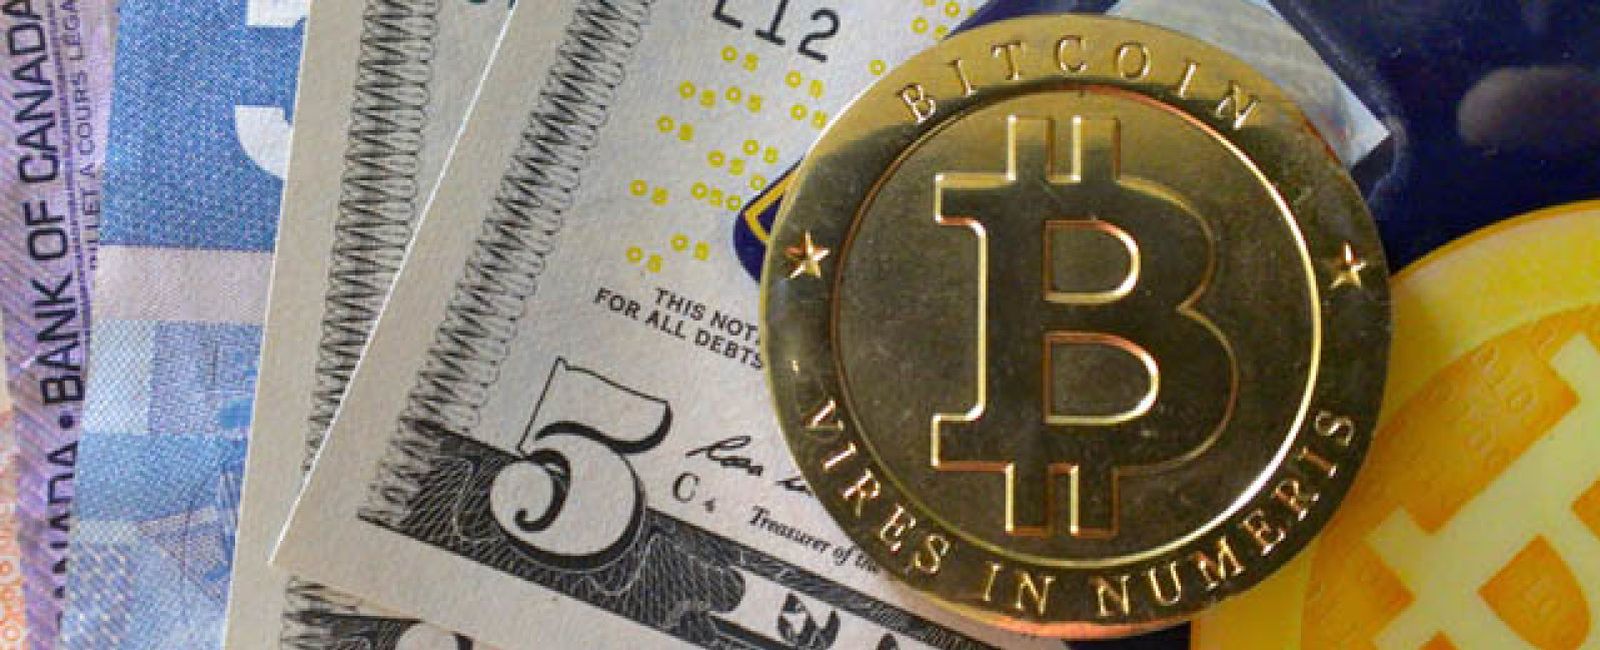 Foto: Bitcoin cotiza al alza pero, ¿qué se puede comprar con ella?